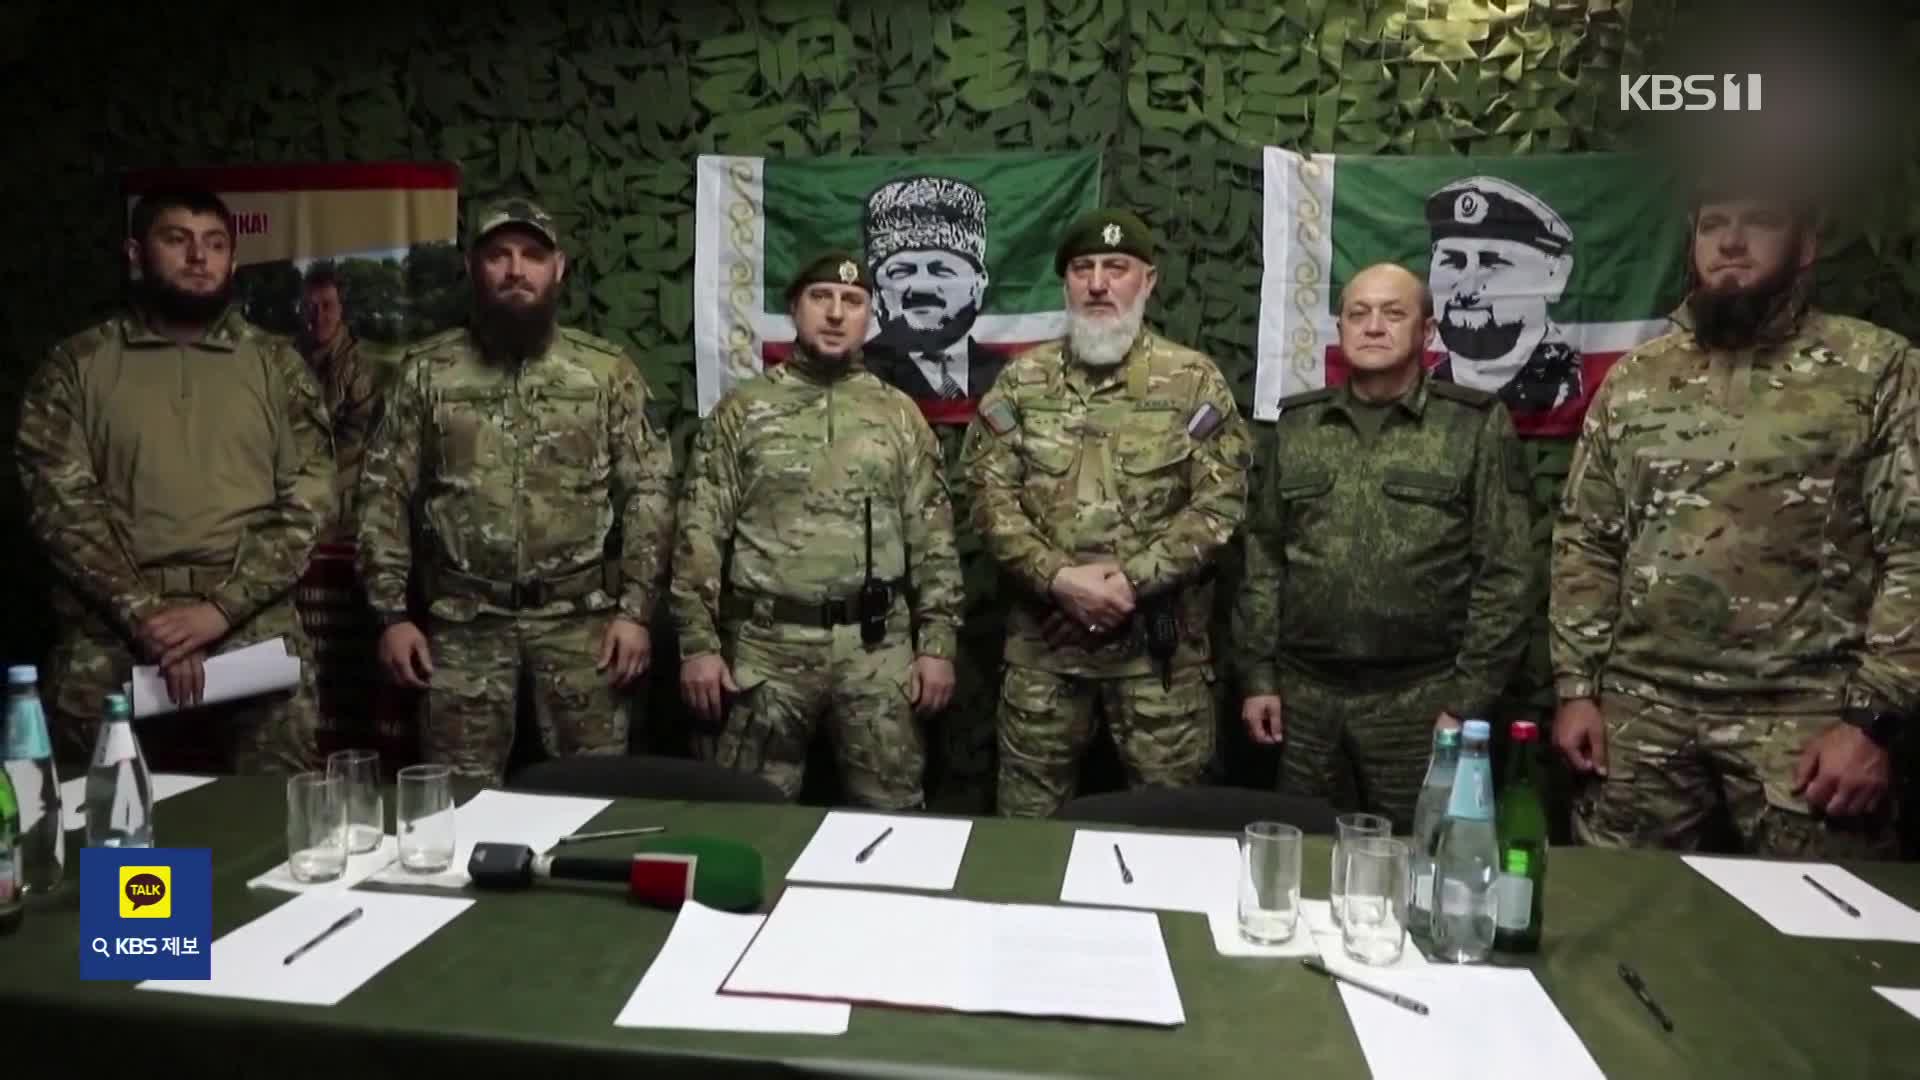 바그너 가고 체첸 특수부대…러, 체첸군과 정식 계약